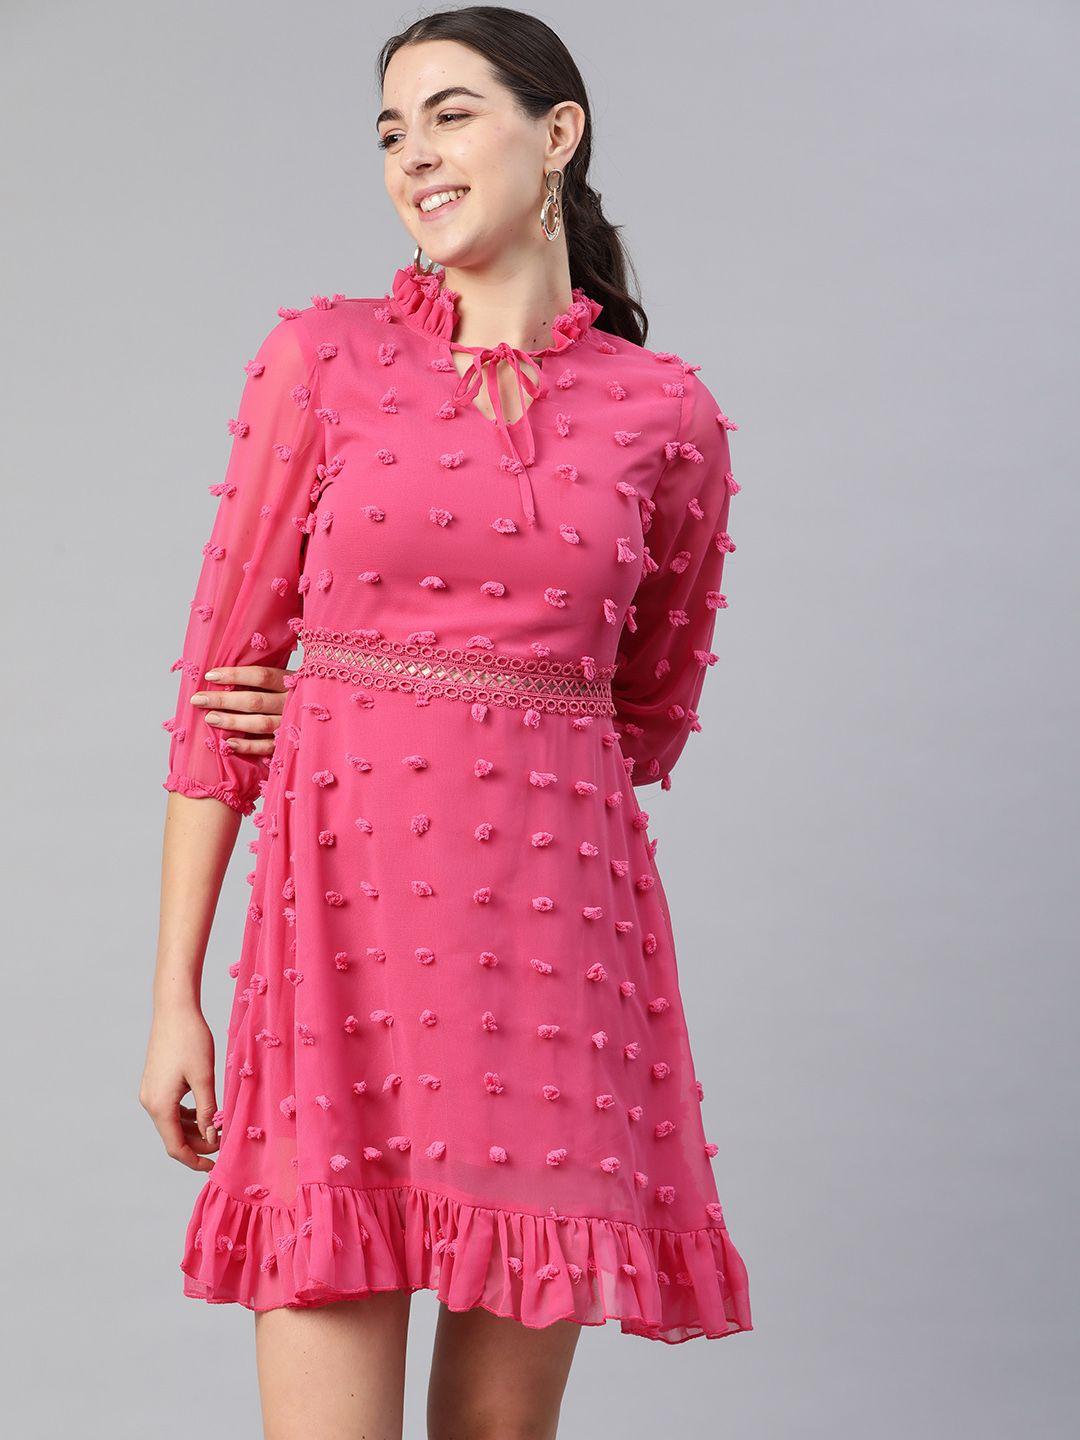 kassually women pink self-design a-line dress